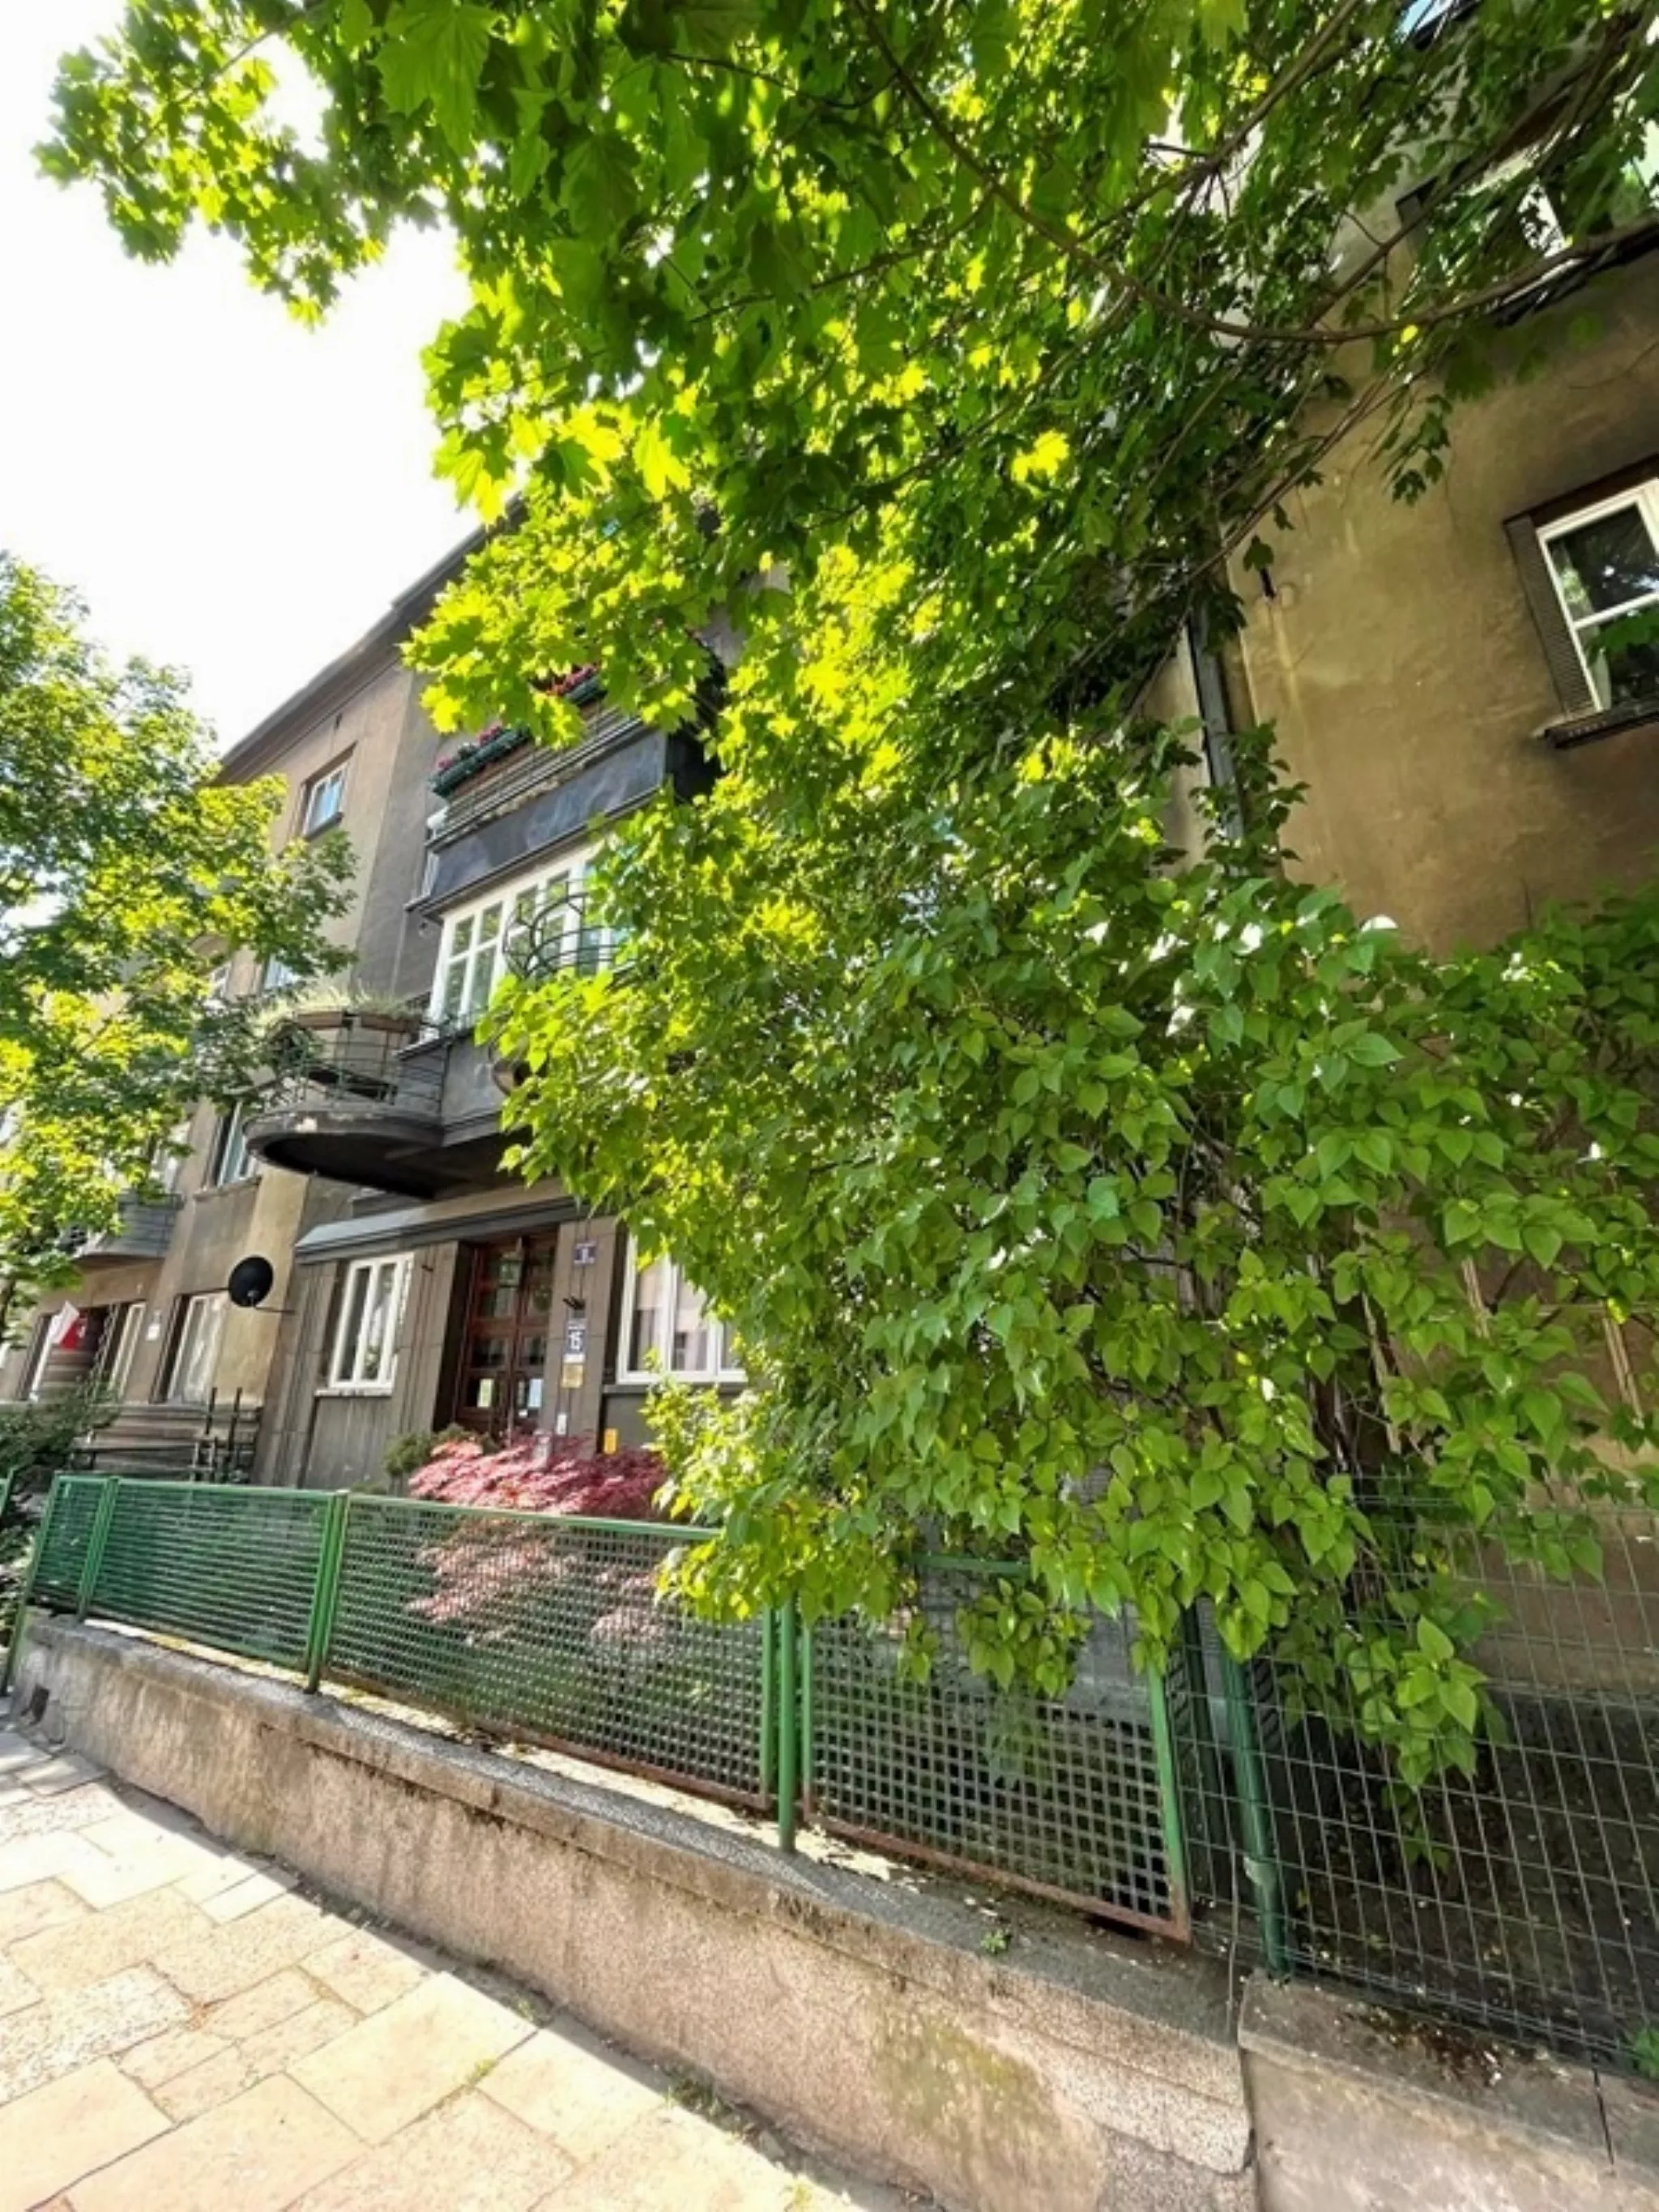 Józefitów, 78m2, 2 pok+ kuchnia, 2 balkony, winda. - Mieszkanie na sprzedaż Kraków